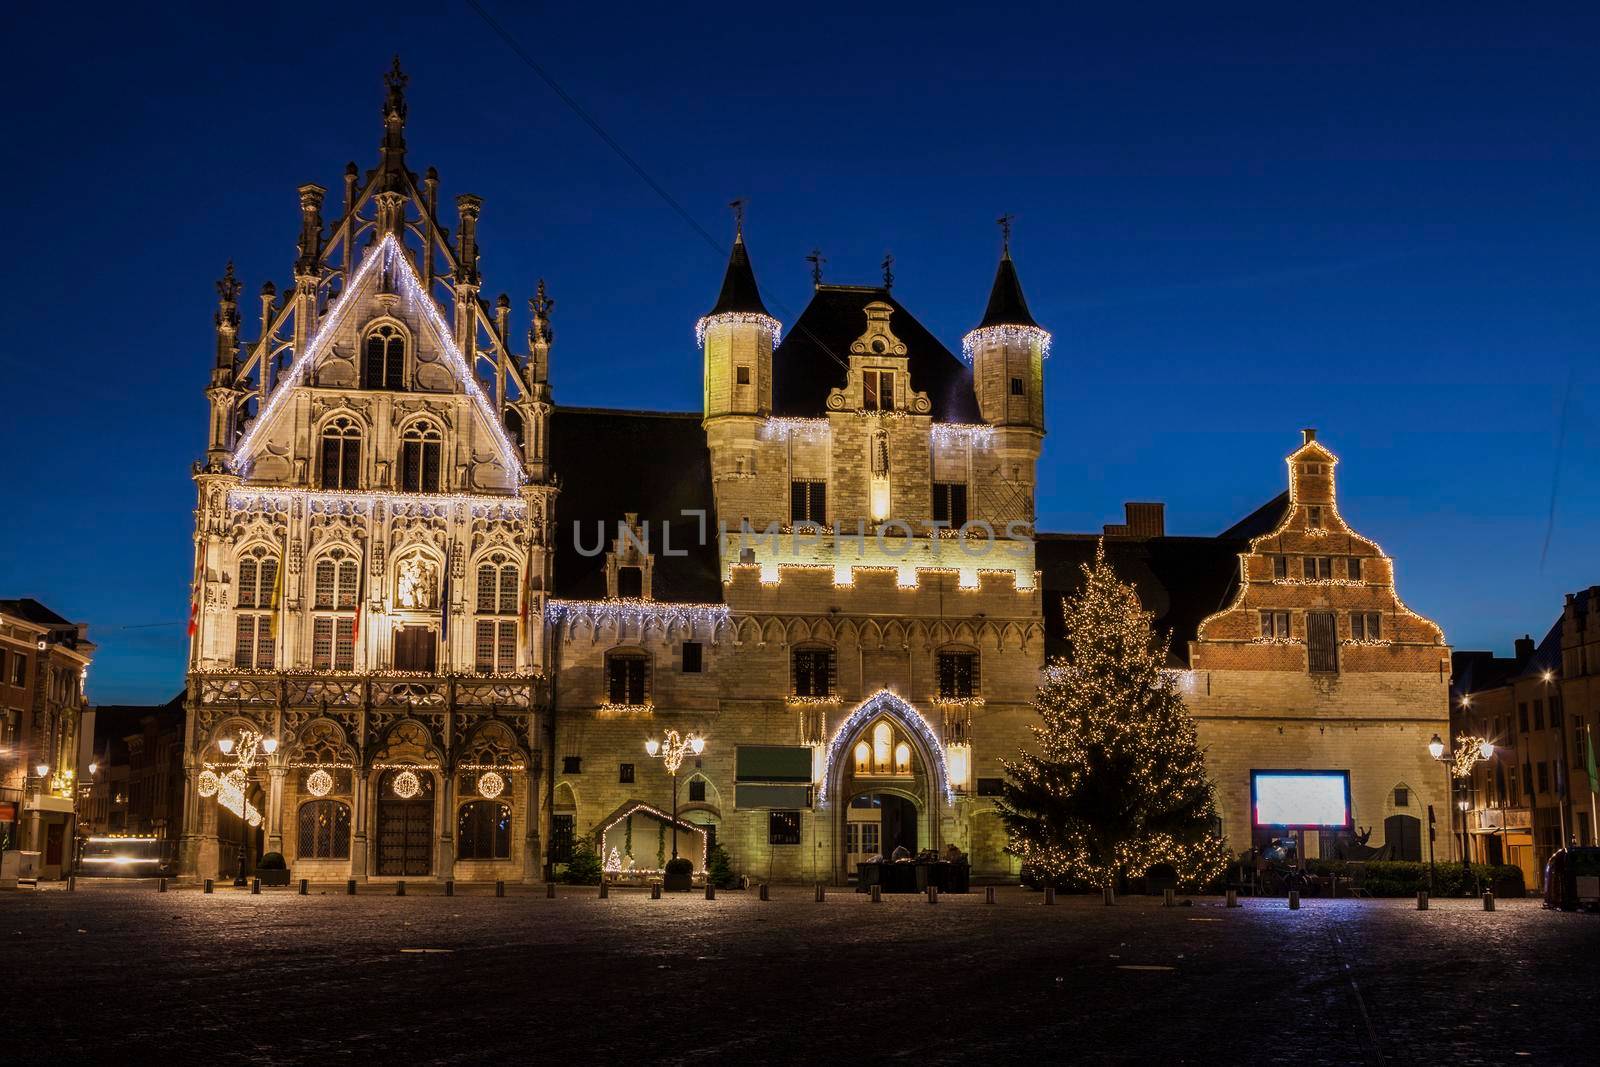 Mechelen City Hall by benkrut